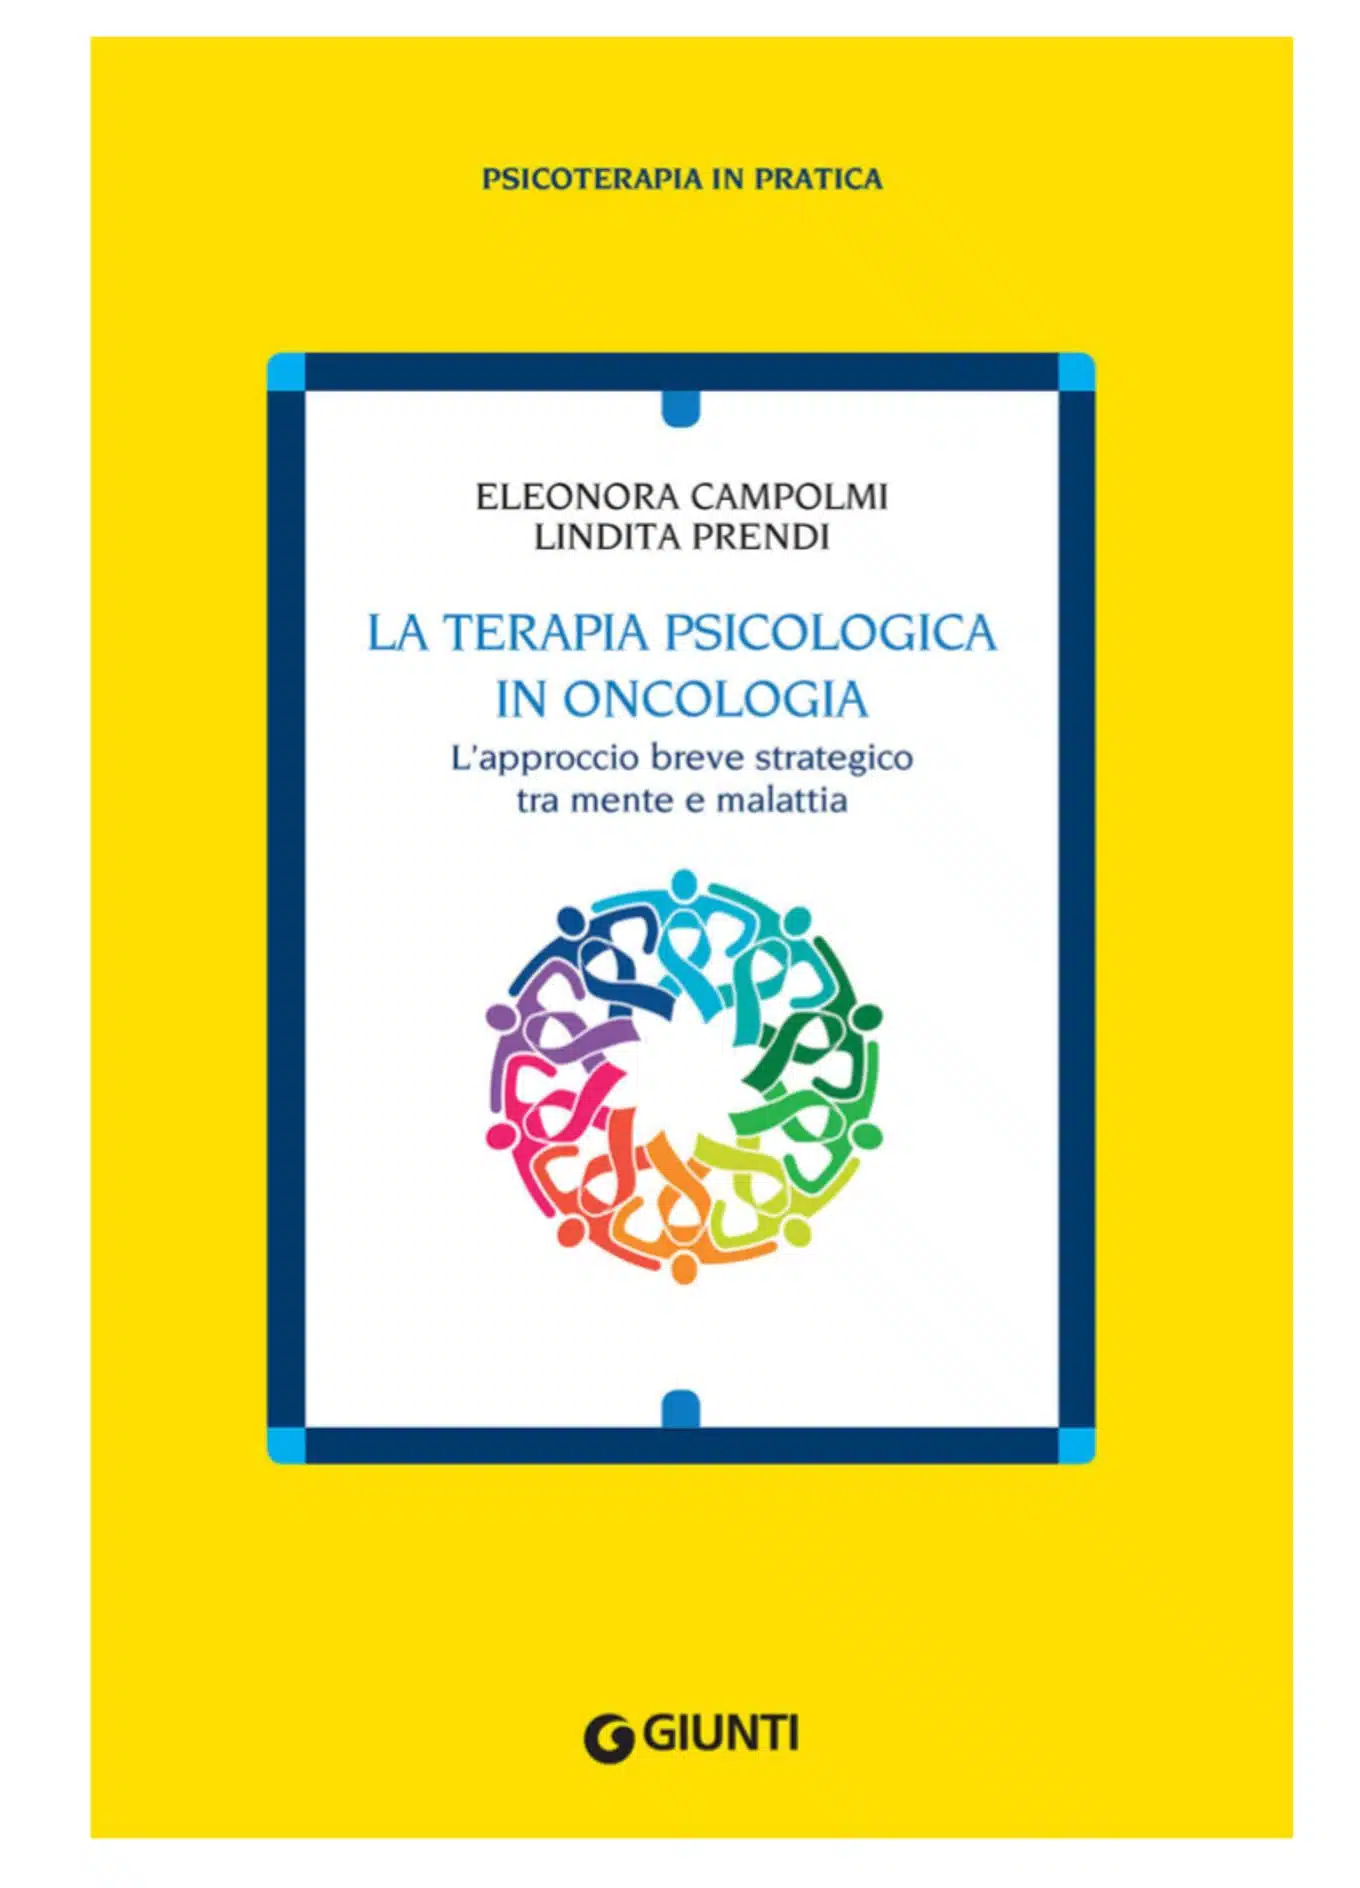 La terapia psicologica in oncologia 2019 recensione del libro - featured